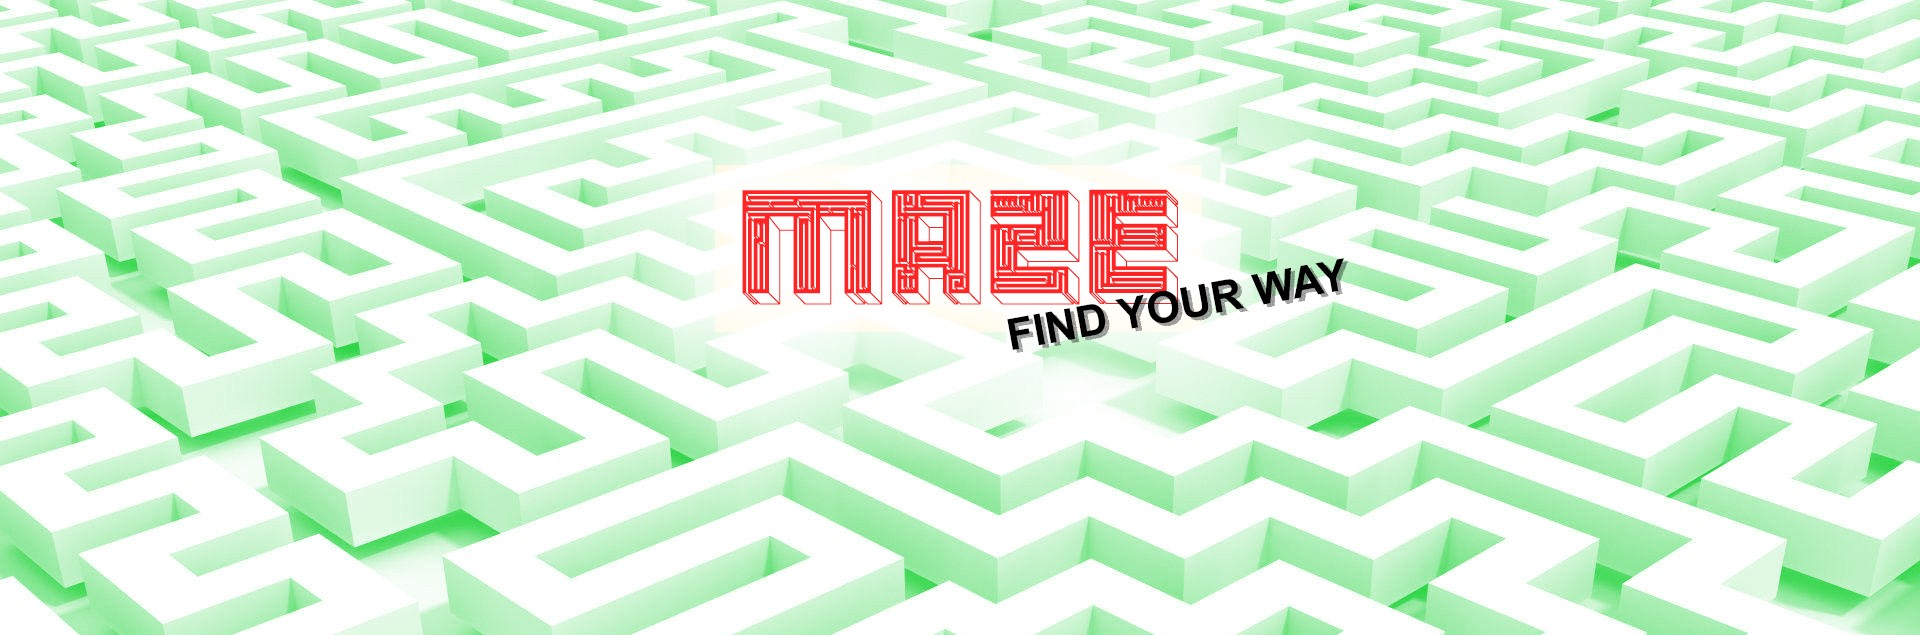 Maze : Find your way